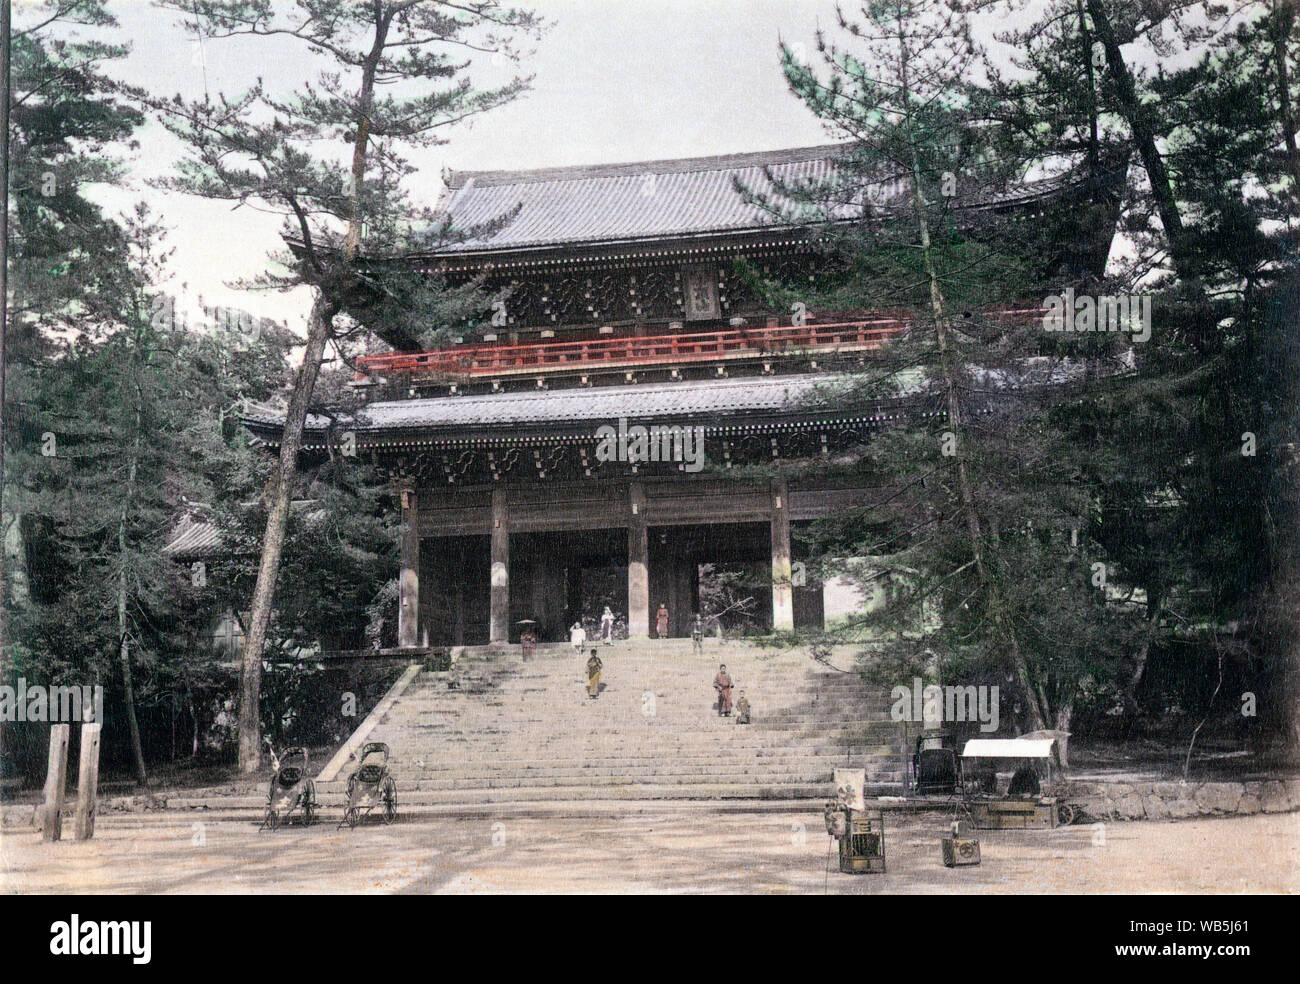 [ 1890 Japon - Porte de Buddhist Temple de Chion-in à Kyoto ] - Portail d'entrée du temple de Chion-in dans Higashiyama-ku, Kyoto. Le temple est le siège de la Terre Pure (Jōdo Shū) secte fondée par Hounen (1133-1212). Le temple original a été construit en 1234. Il a été détruit et reconstruit plusieurs fois. 19e siècle vintage albumen photo. Banque D'Images